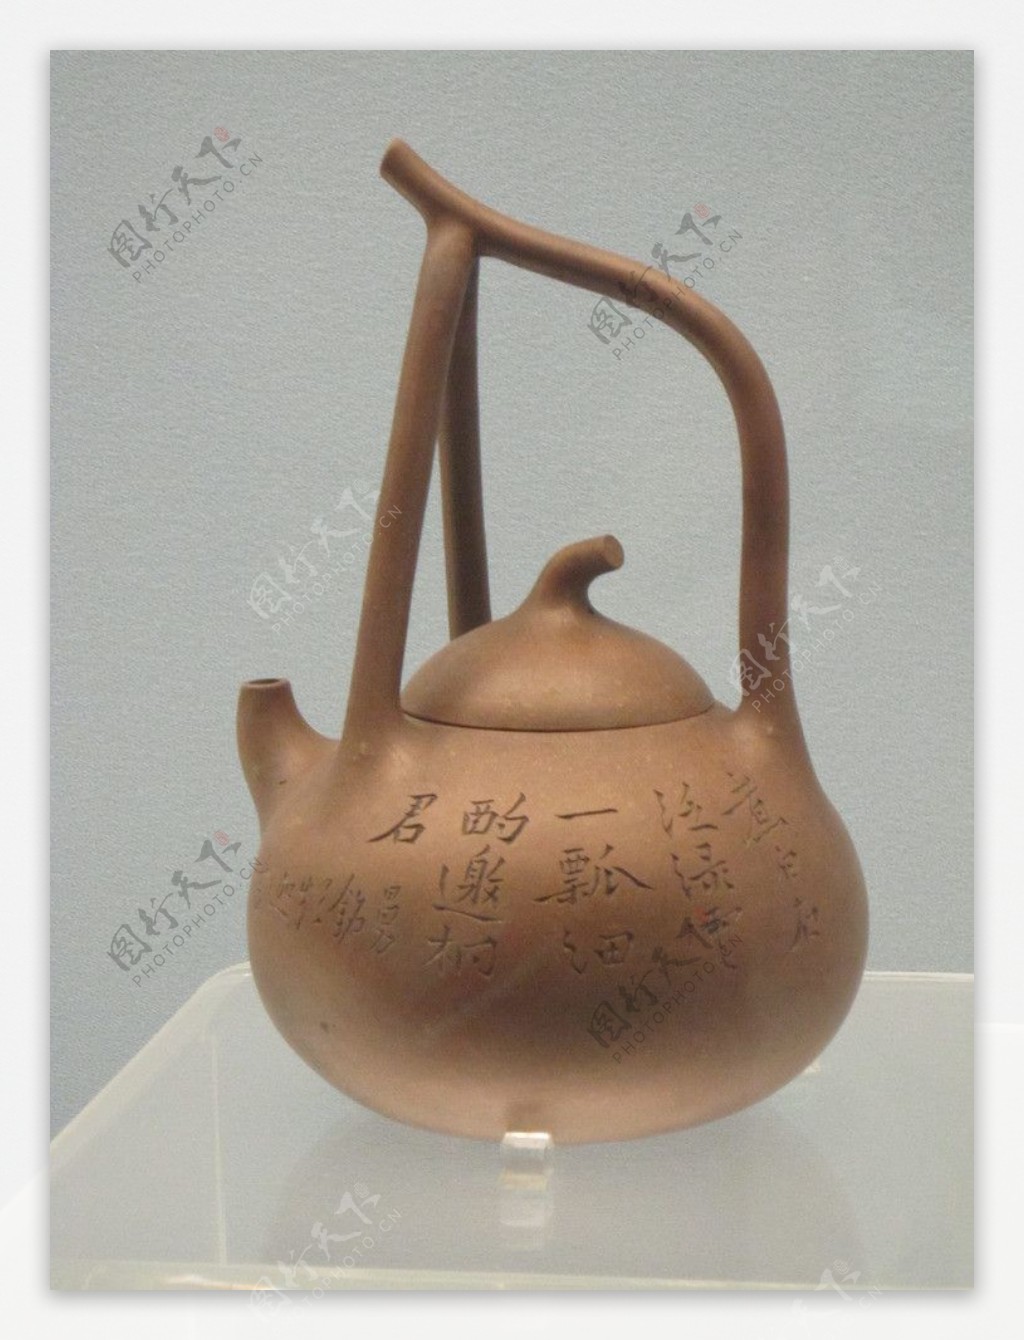 上海博物馆的壶图片